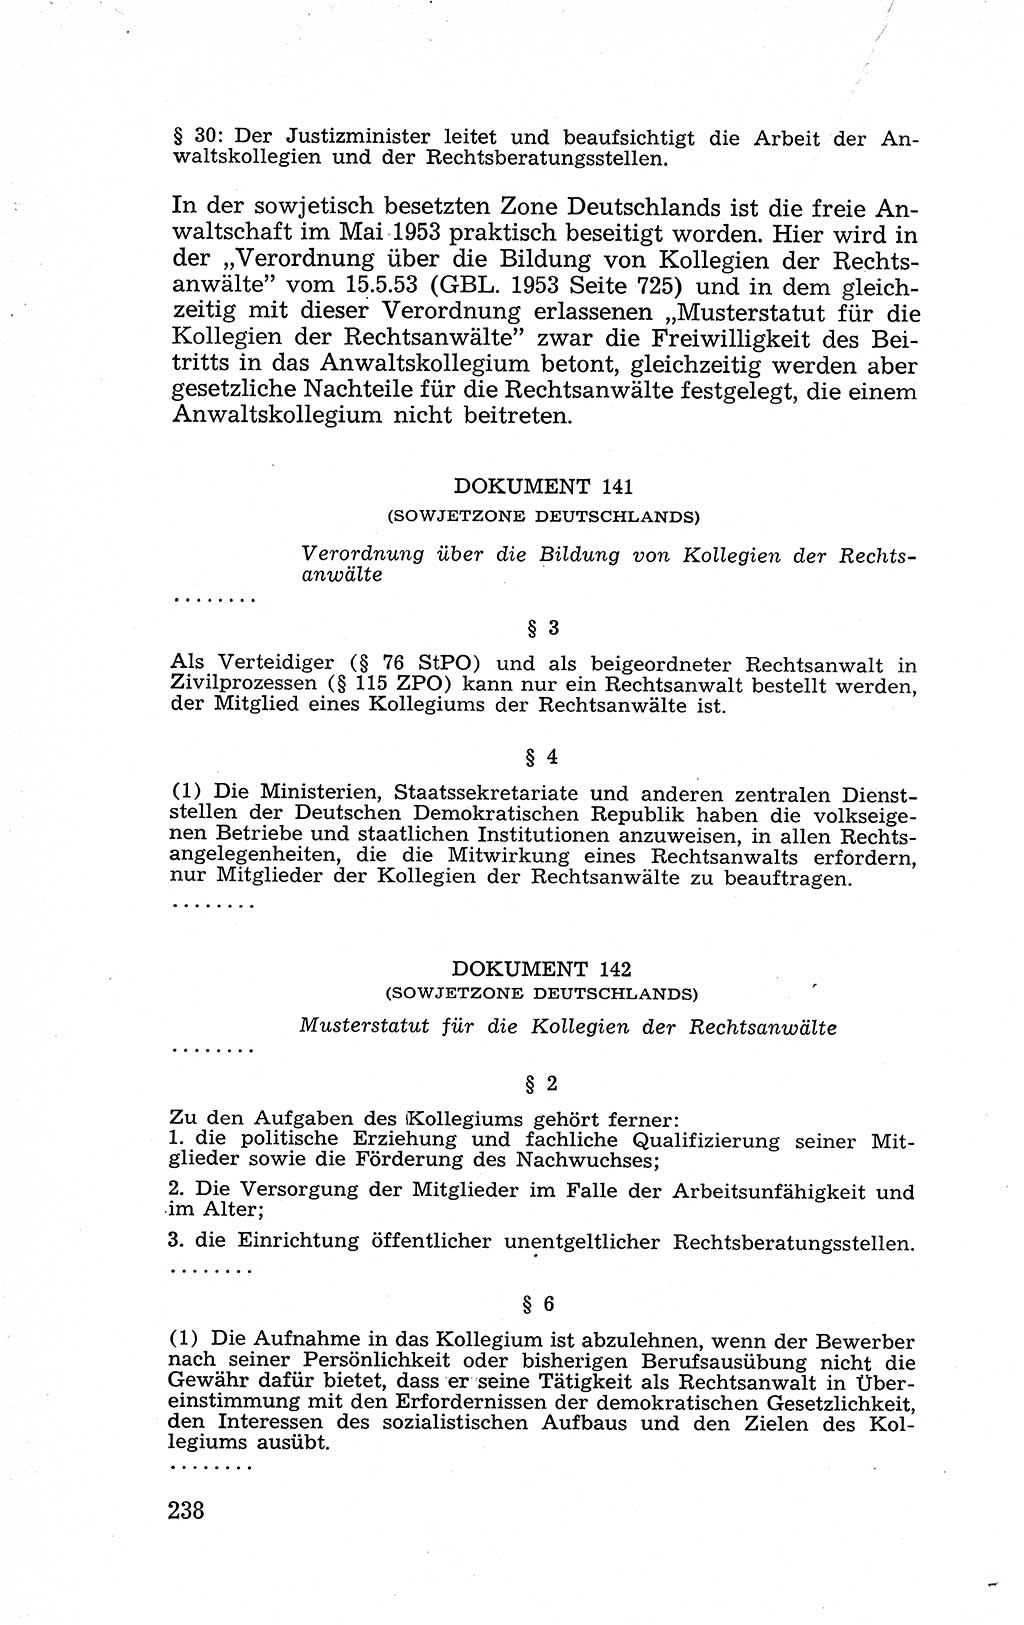 Recht in Fesseln, Dokumente, Internationale Juristen-Kommission [Bundesrepublik Deutschland (BRD)] 1955, Seite 238 (R. Dok. IJK BRD 1955, S. 238)